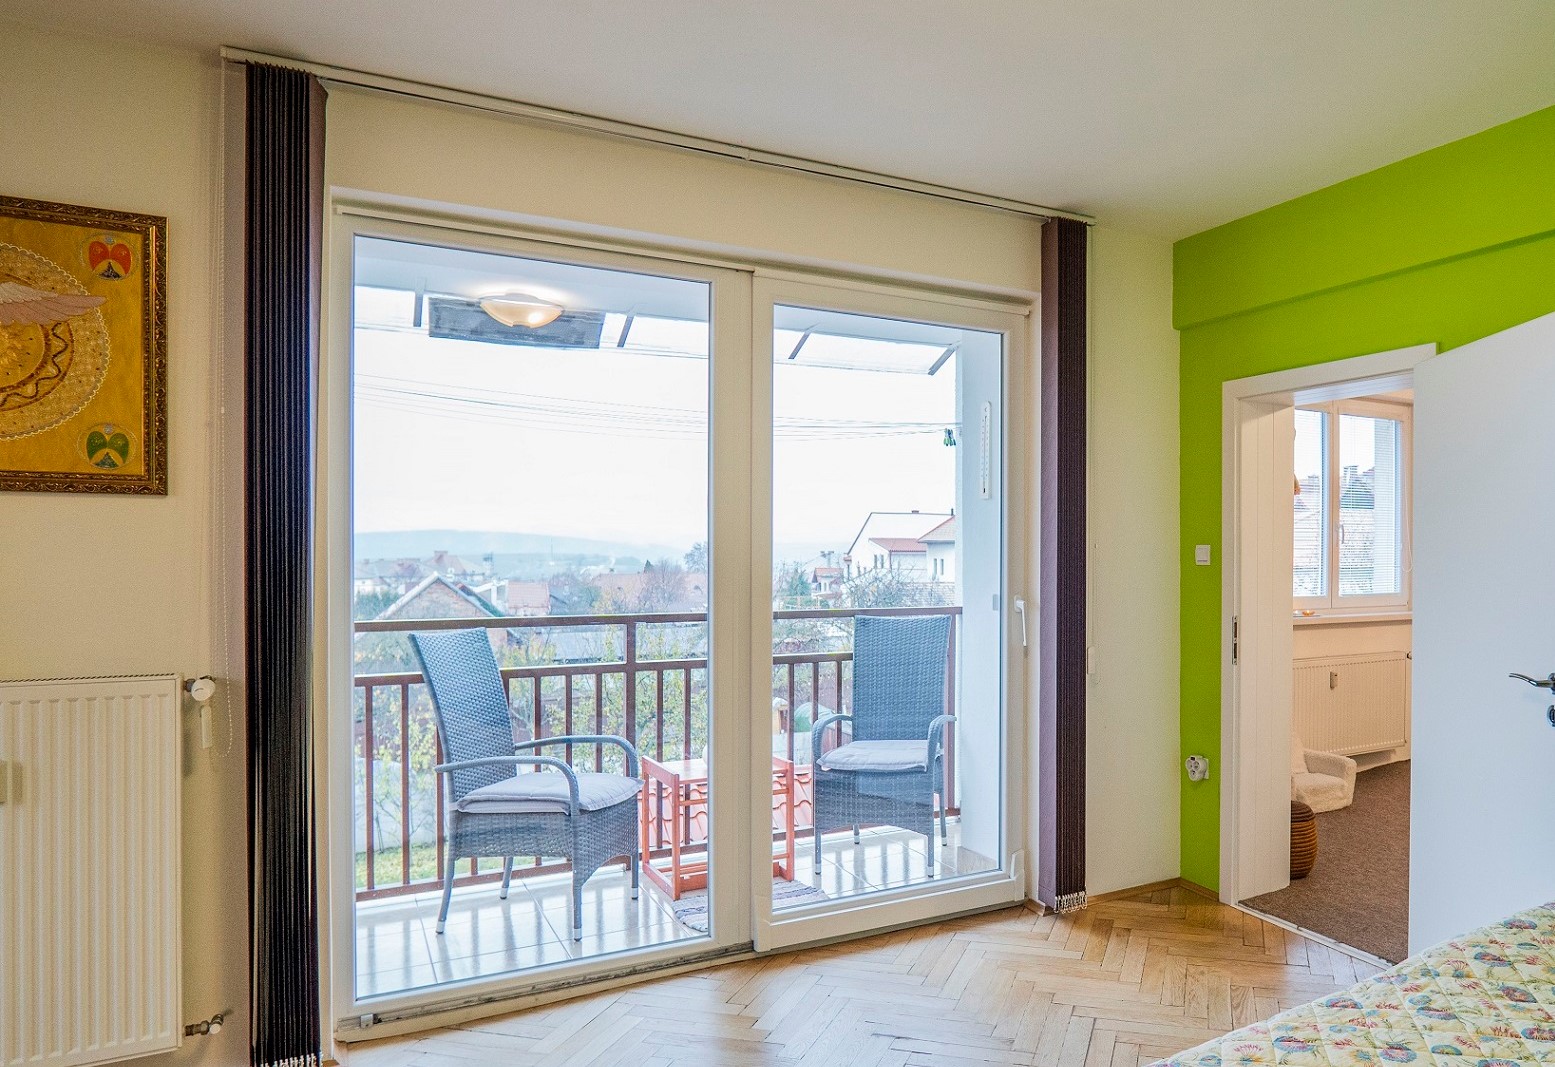 PREDANÝ: 3-izbový veľký byt s lodžiou, Kukučínova ulica, Levoča, 98 m2, 2/3 posch.